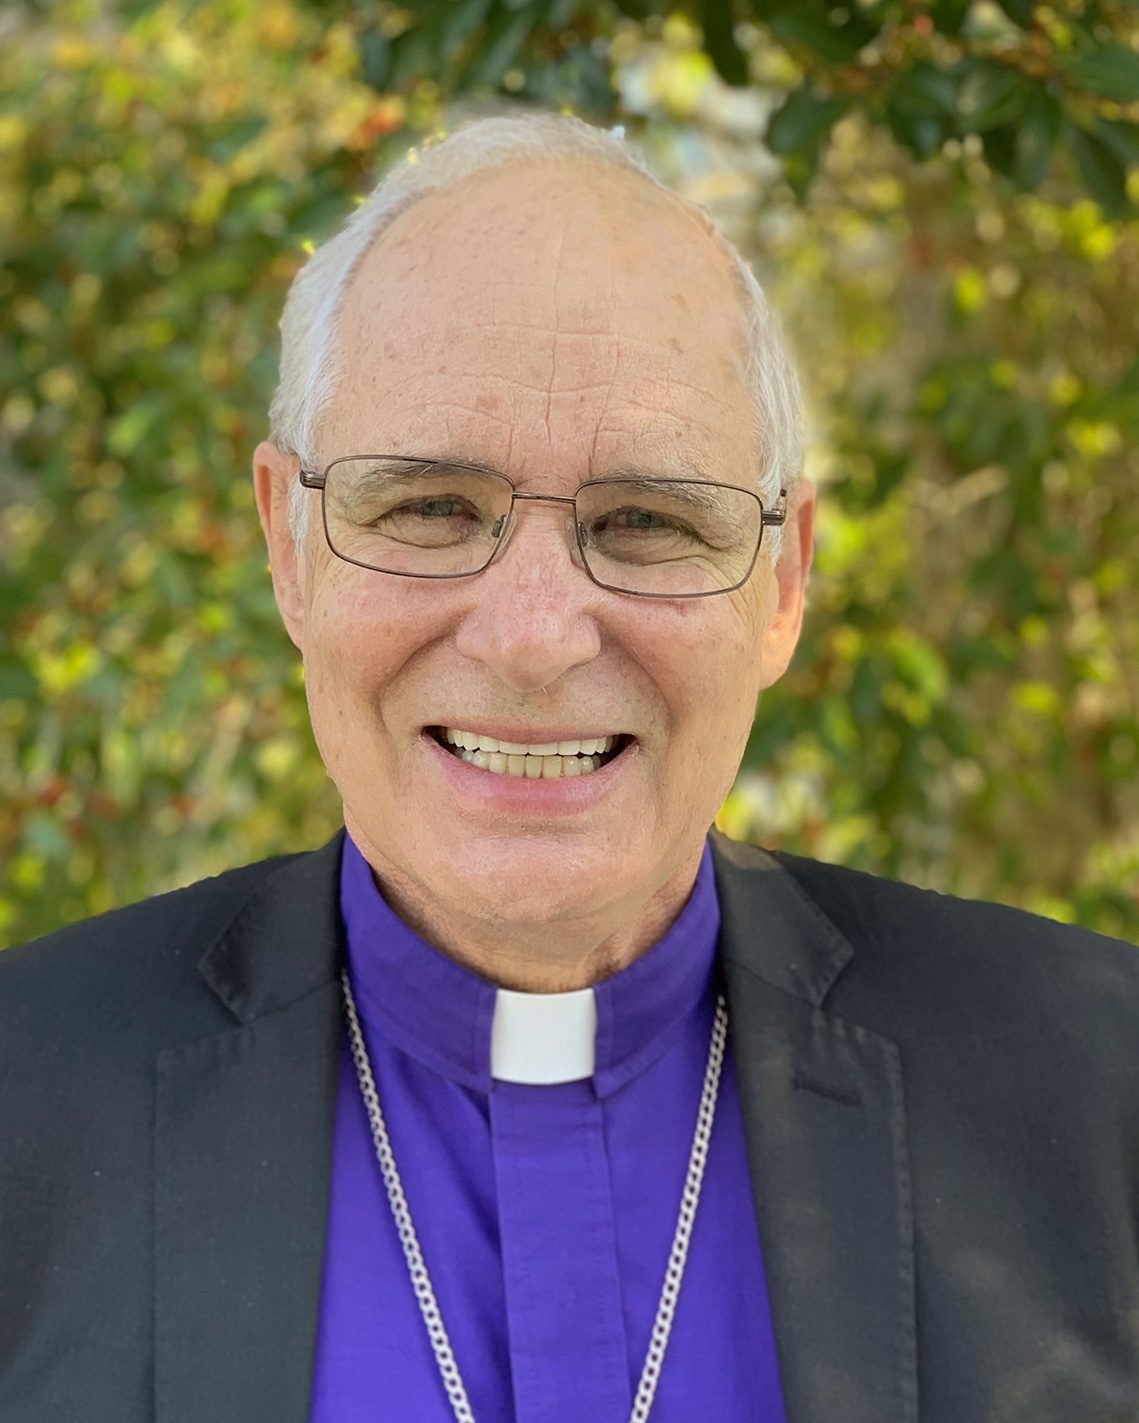 Bishop Neil Lebhar